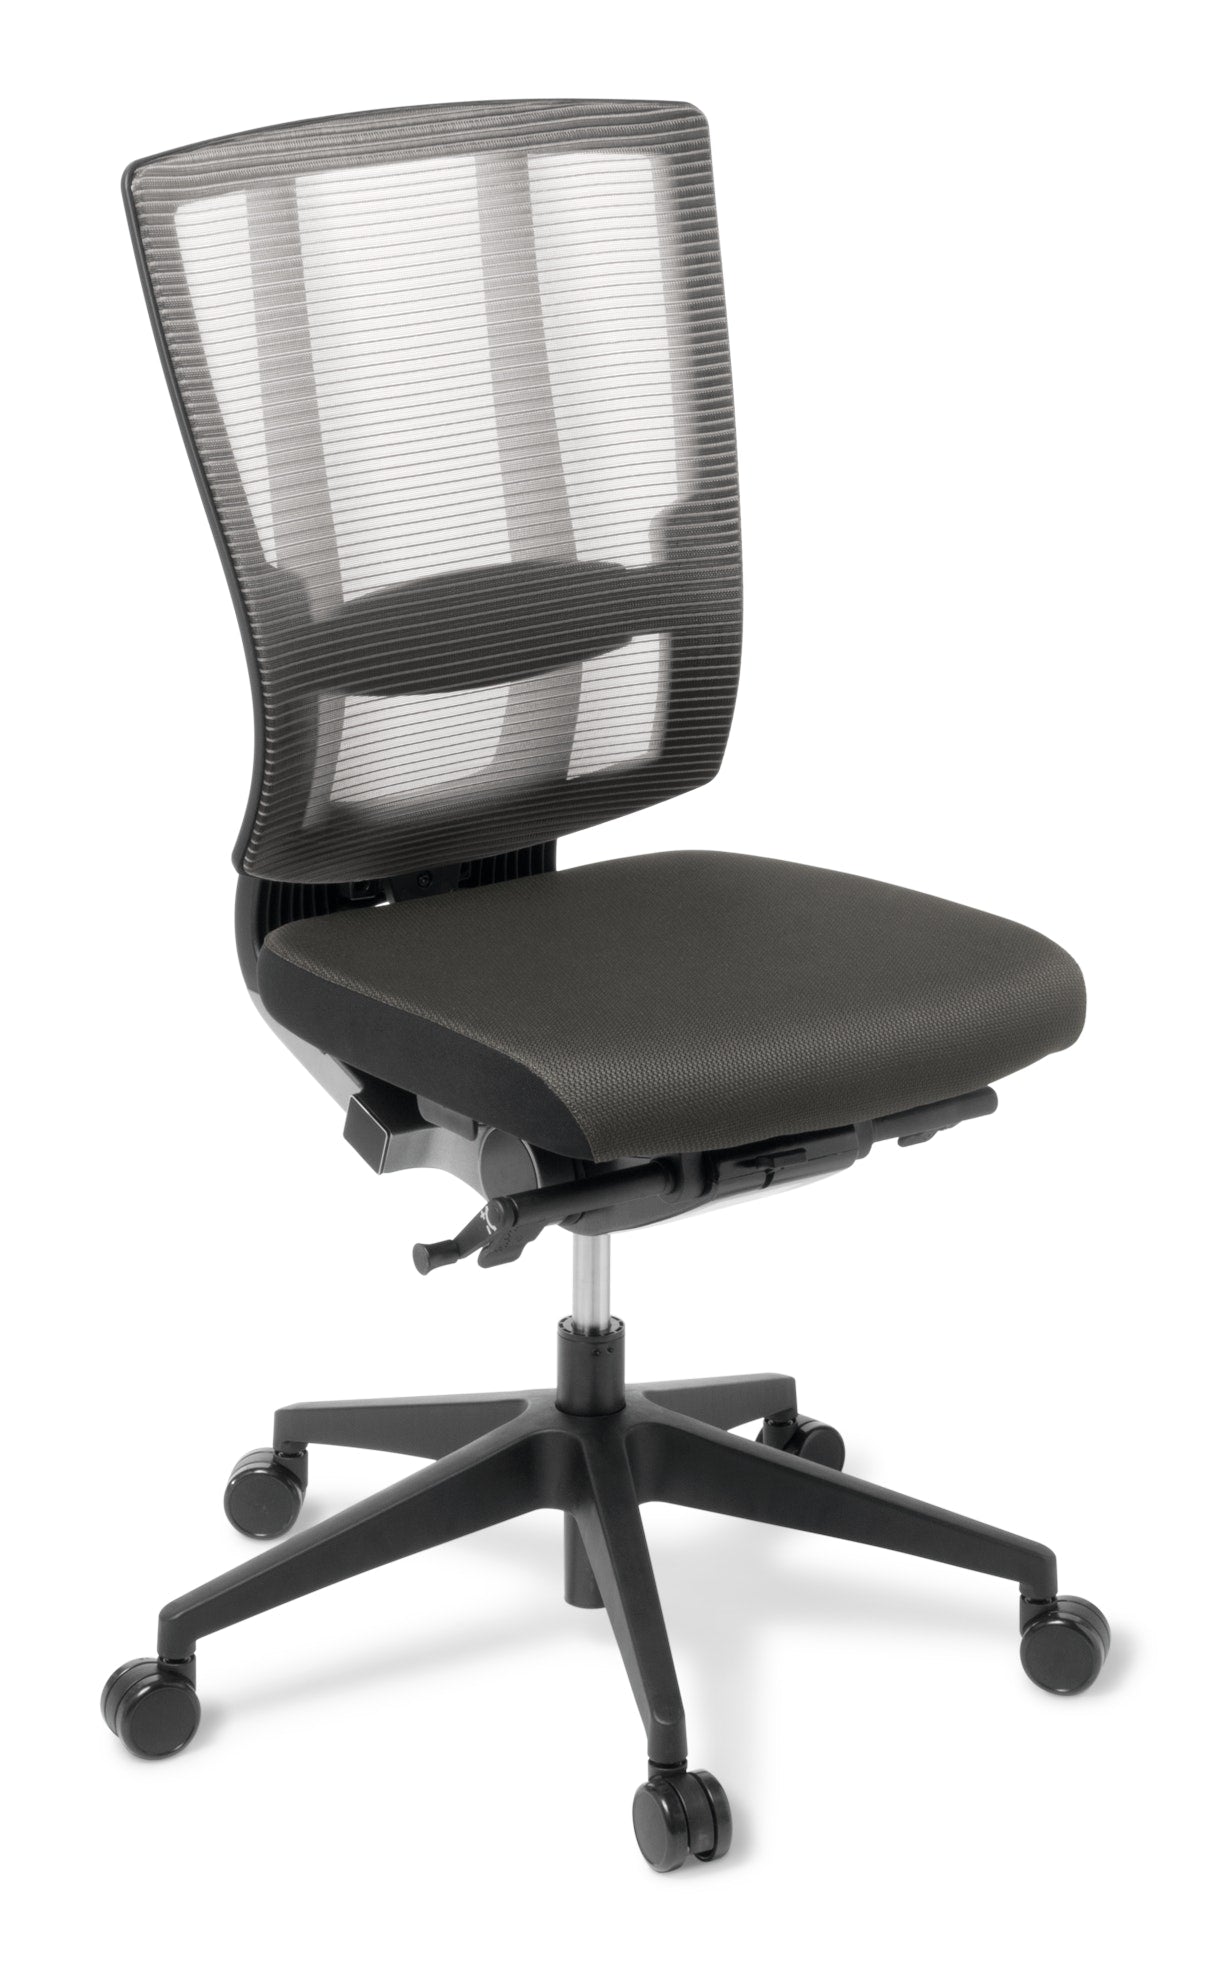 Cloud Ergo Office Chair